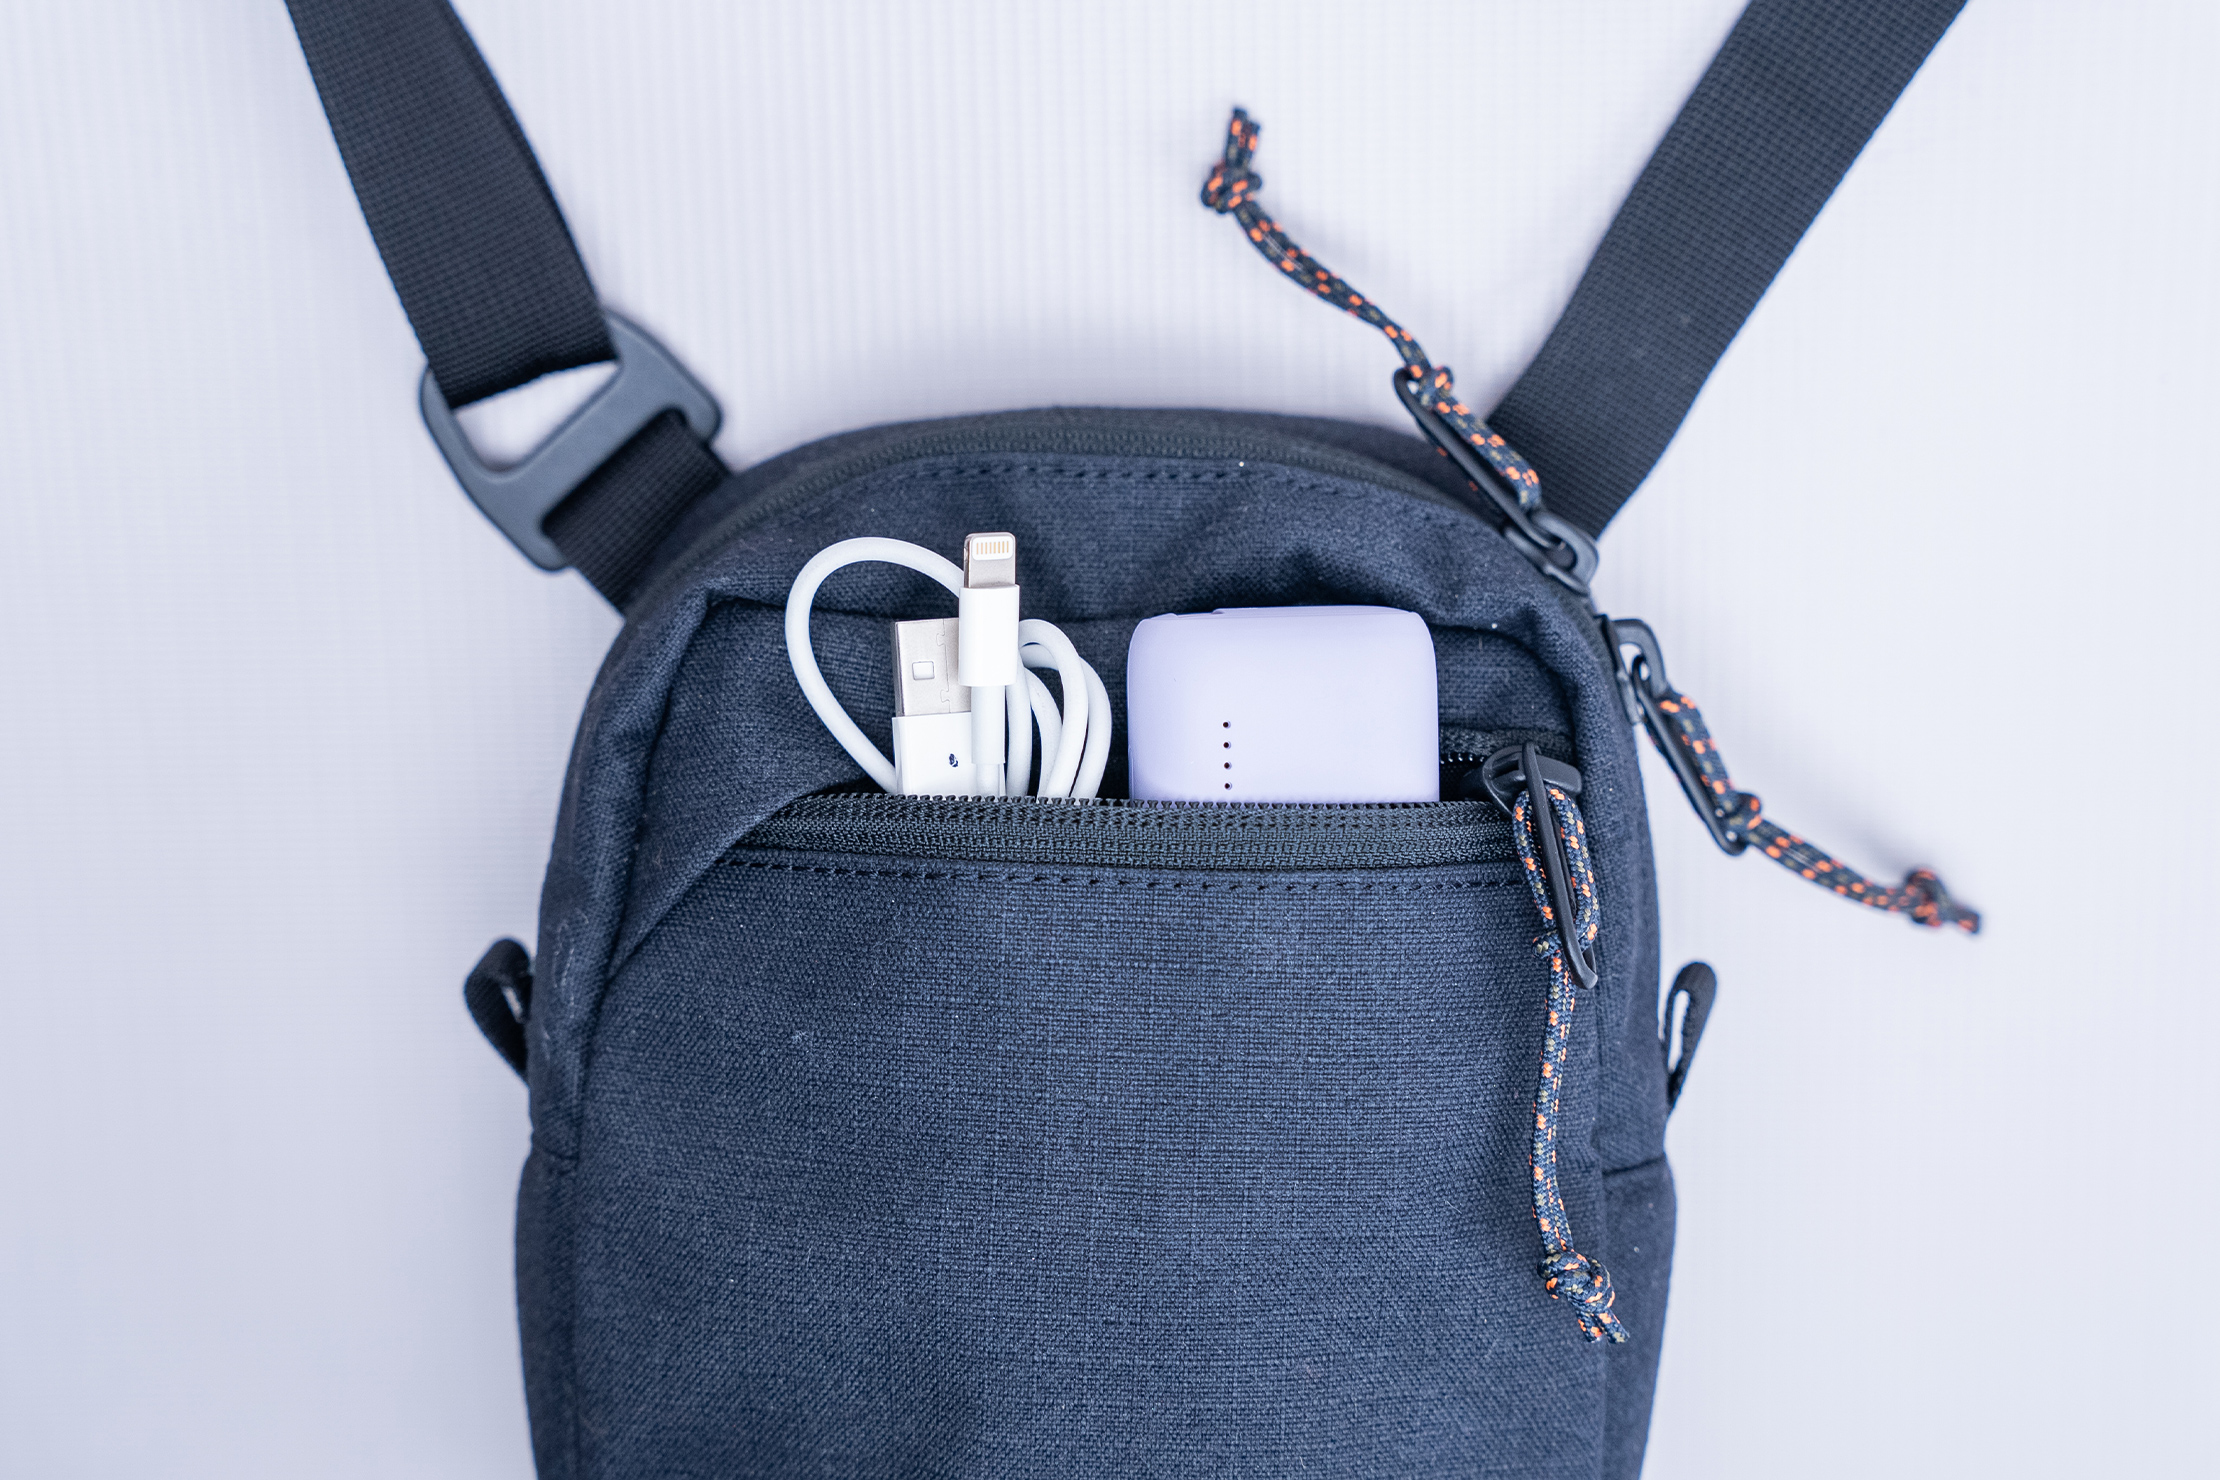 Finisterre Nautilus Pocket Pack Bag Front Pocket In Use